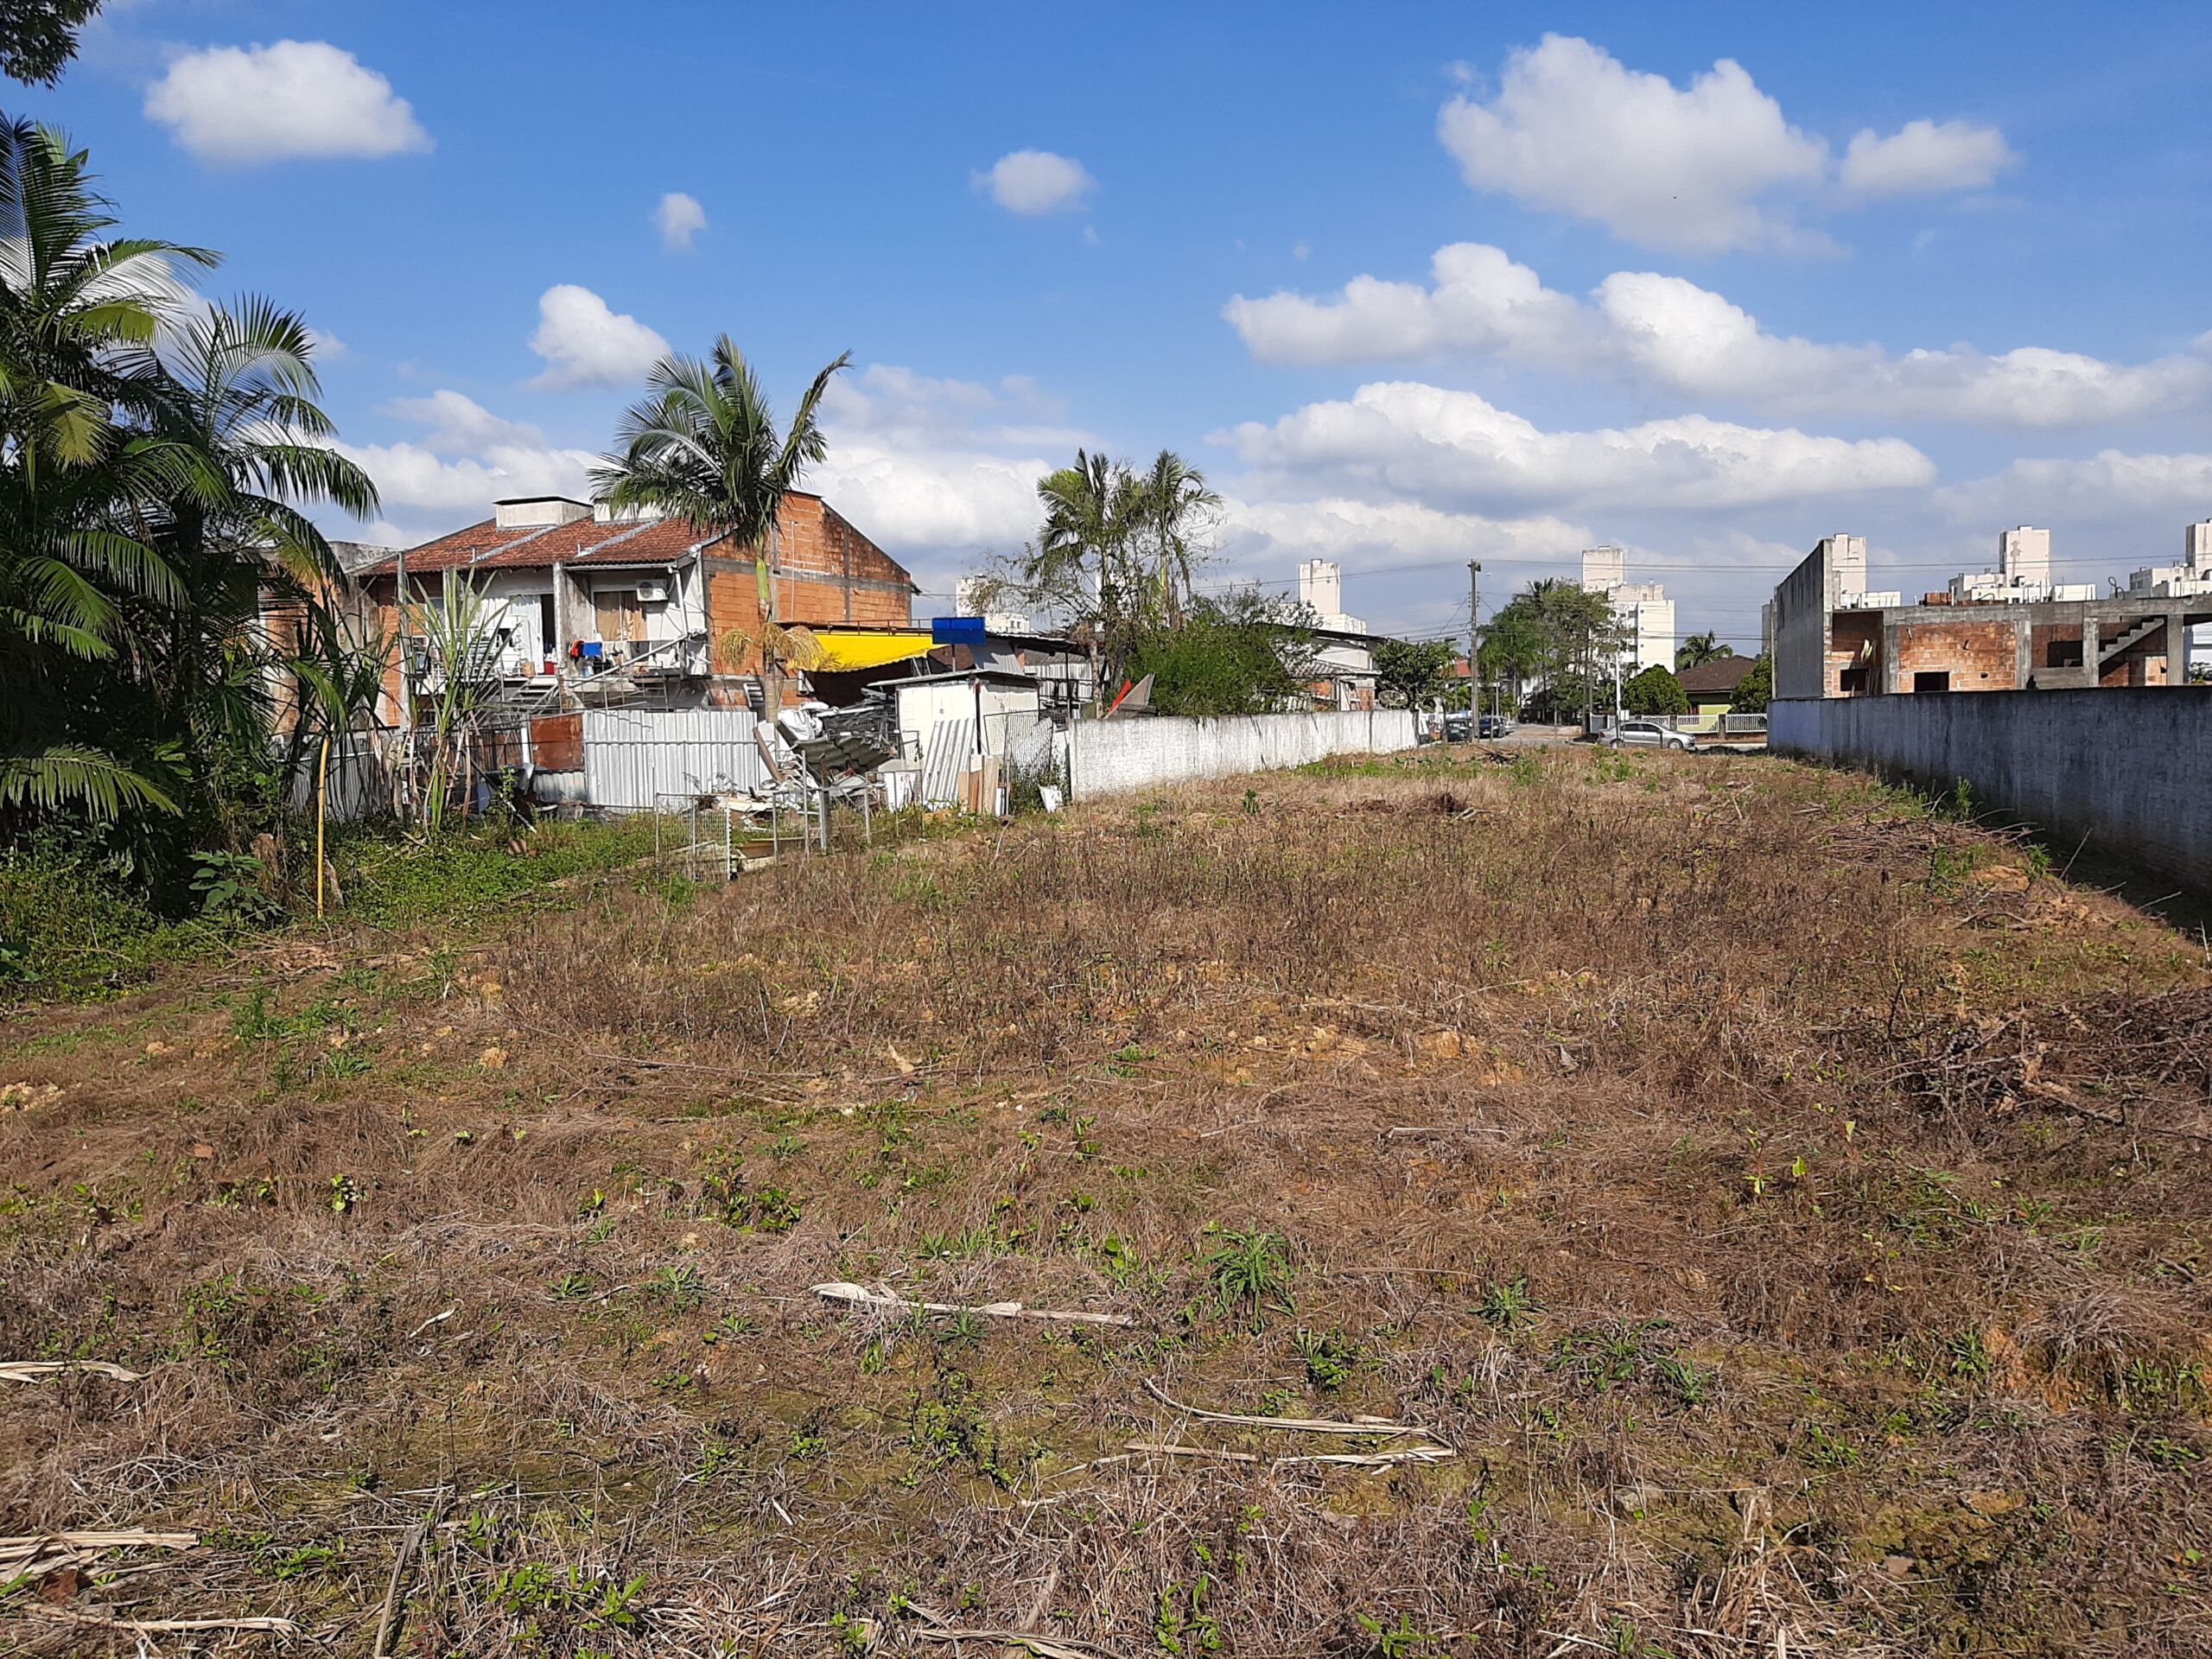 Terreno – Plano – Limpo – Meio de quadra – 1372m² – Vila Nova